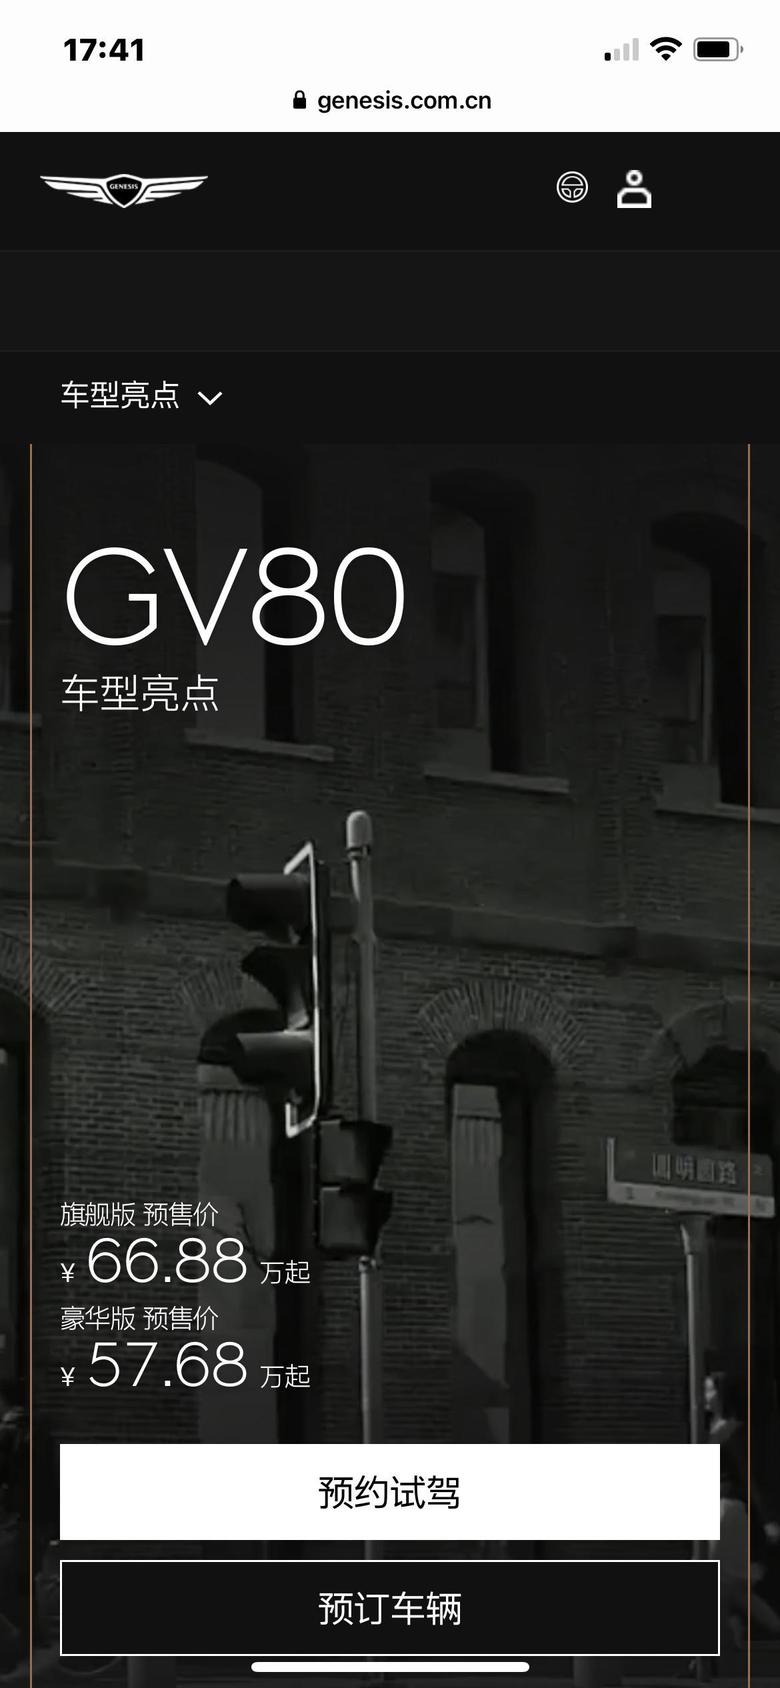 捷尼赛思gv80 捷尼赛思两款车型预售价公布：G80预售36.38-43.68万元，GV80预售57.68-66.88万元。​​​